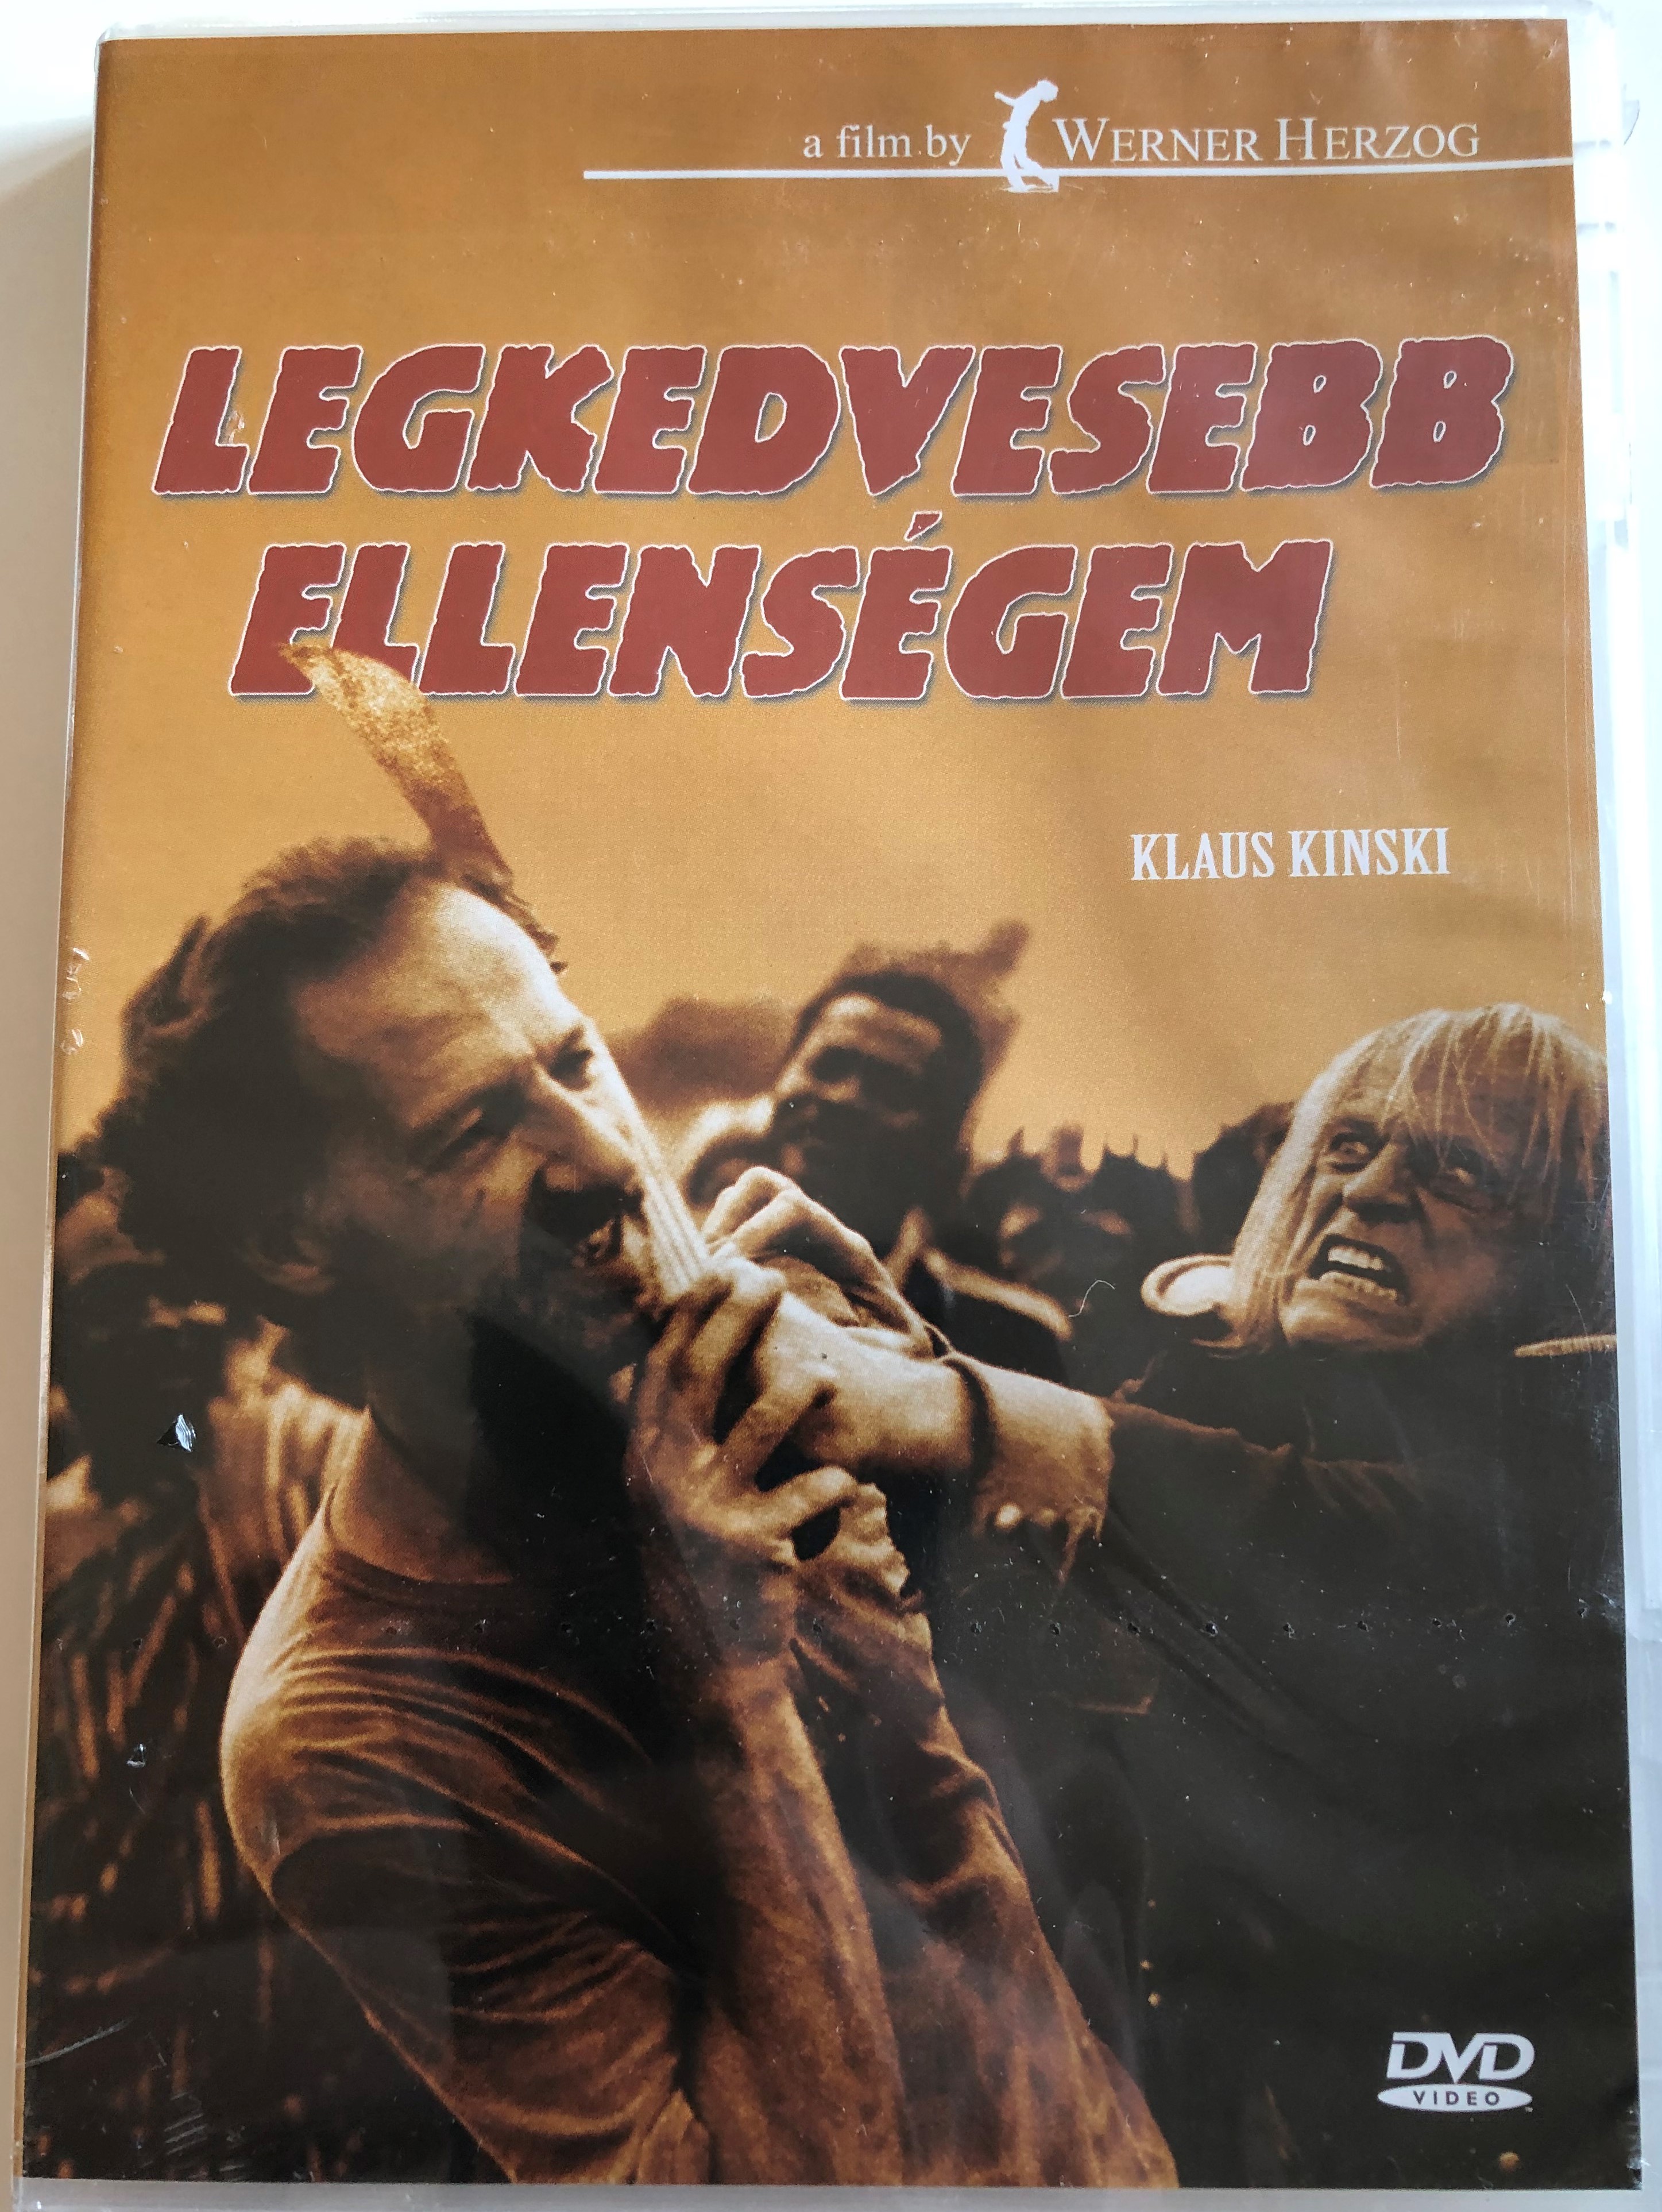 Mein liebster Feind - Klaus Kinski DVD 1999 Legkedvesebb ellenségem 1.JPG